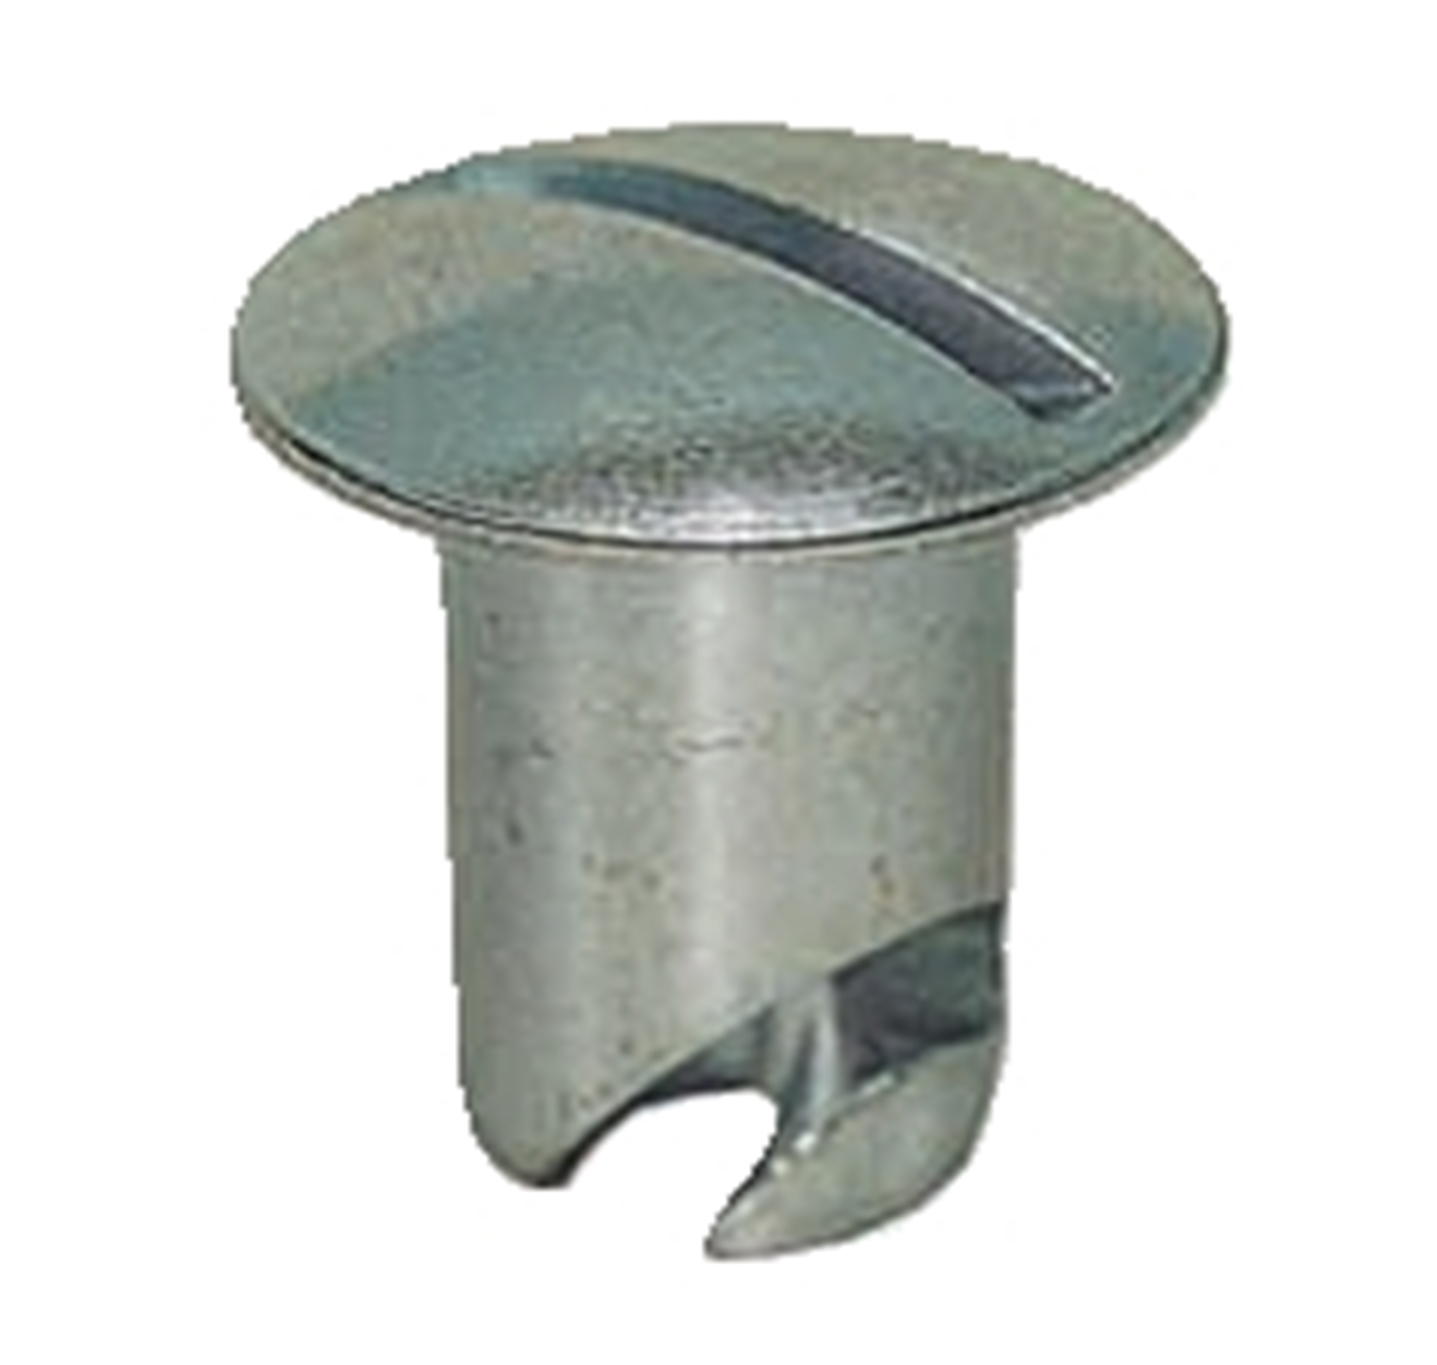 Panelfast 5/16" Aluminum Oval Head .550" Grip